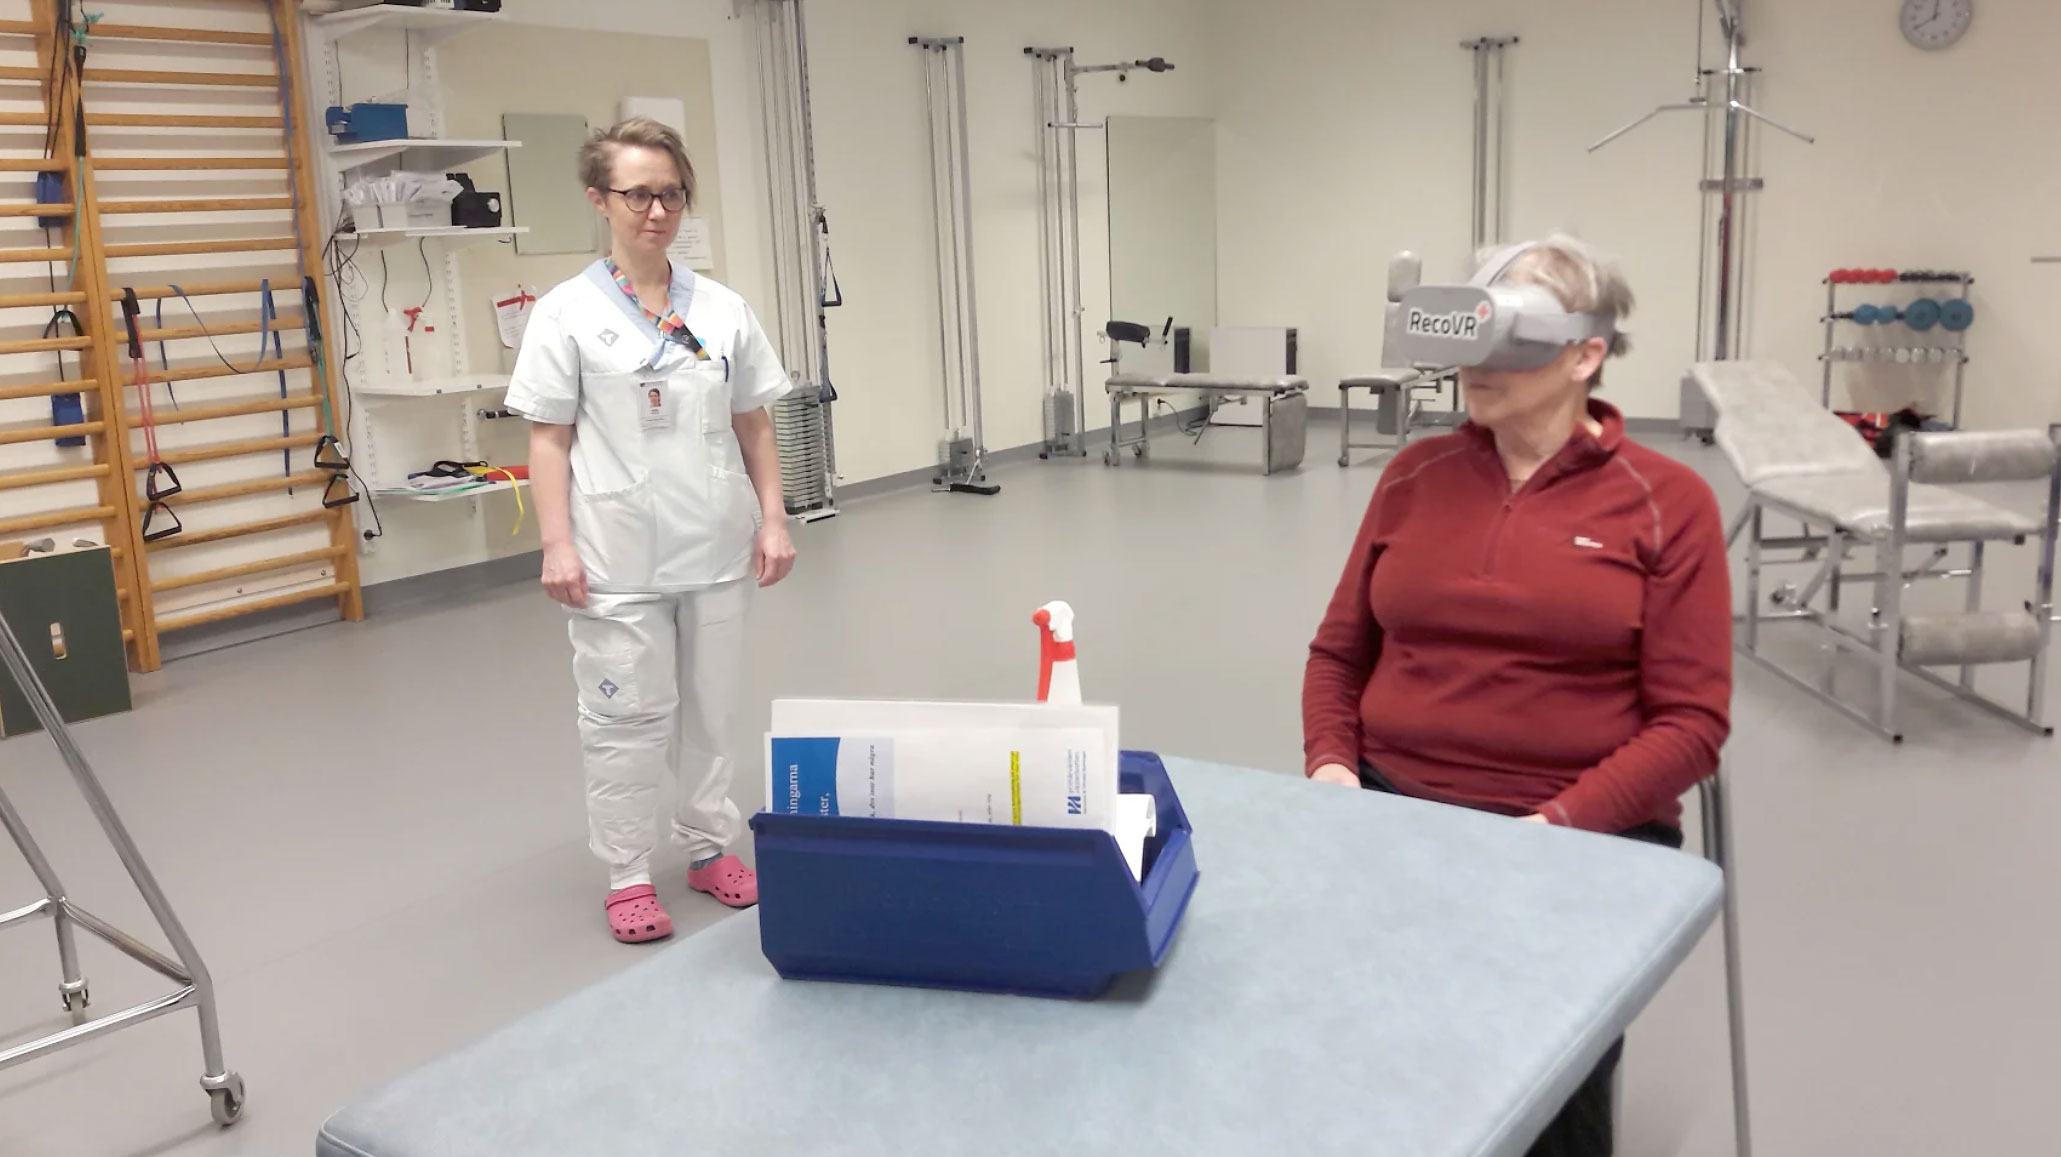 Fysioterapeut Mimmi Sokka och patienten Ann-Katrin Lundqvist testar de nya VR-glasögonen vid Storumans sjukstuga.